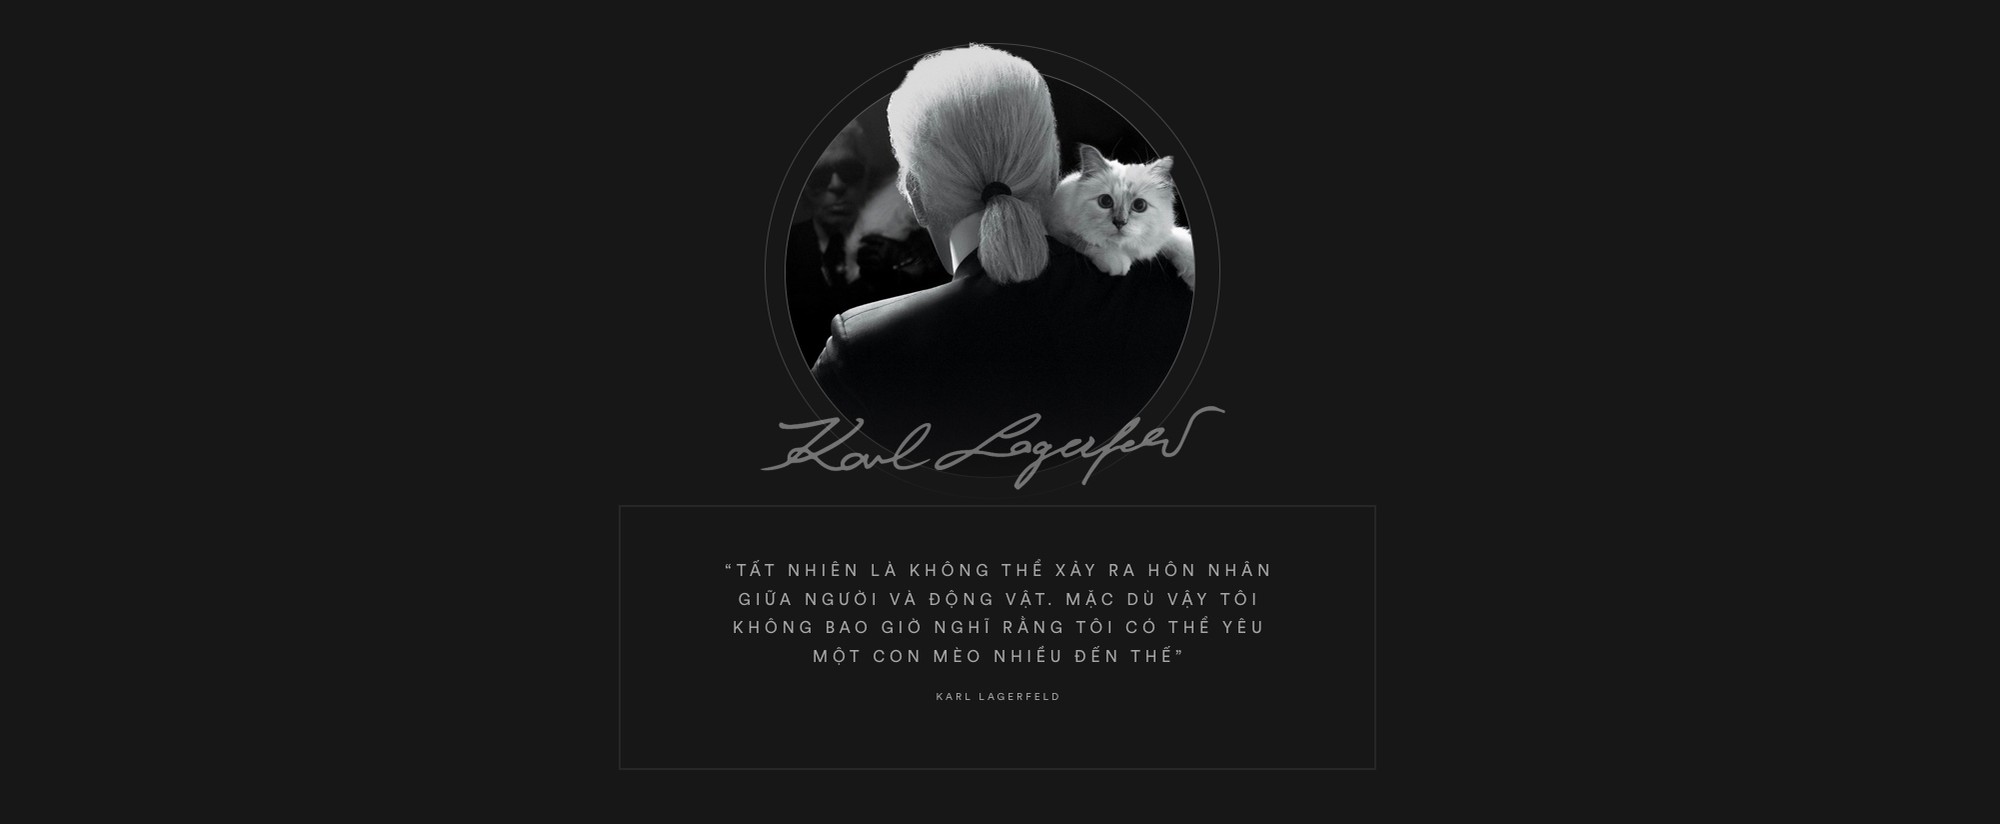 Karl Lagerfeld: 85 năm cuộc đời chỉ gắn liền với hai chữ, vài người đàn ông và một chú mèo - Ảnh 15.